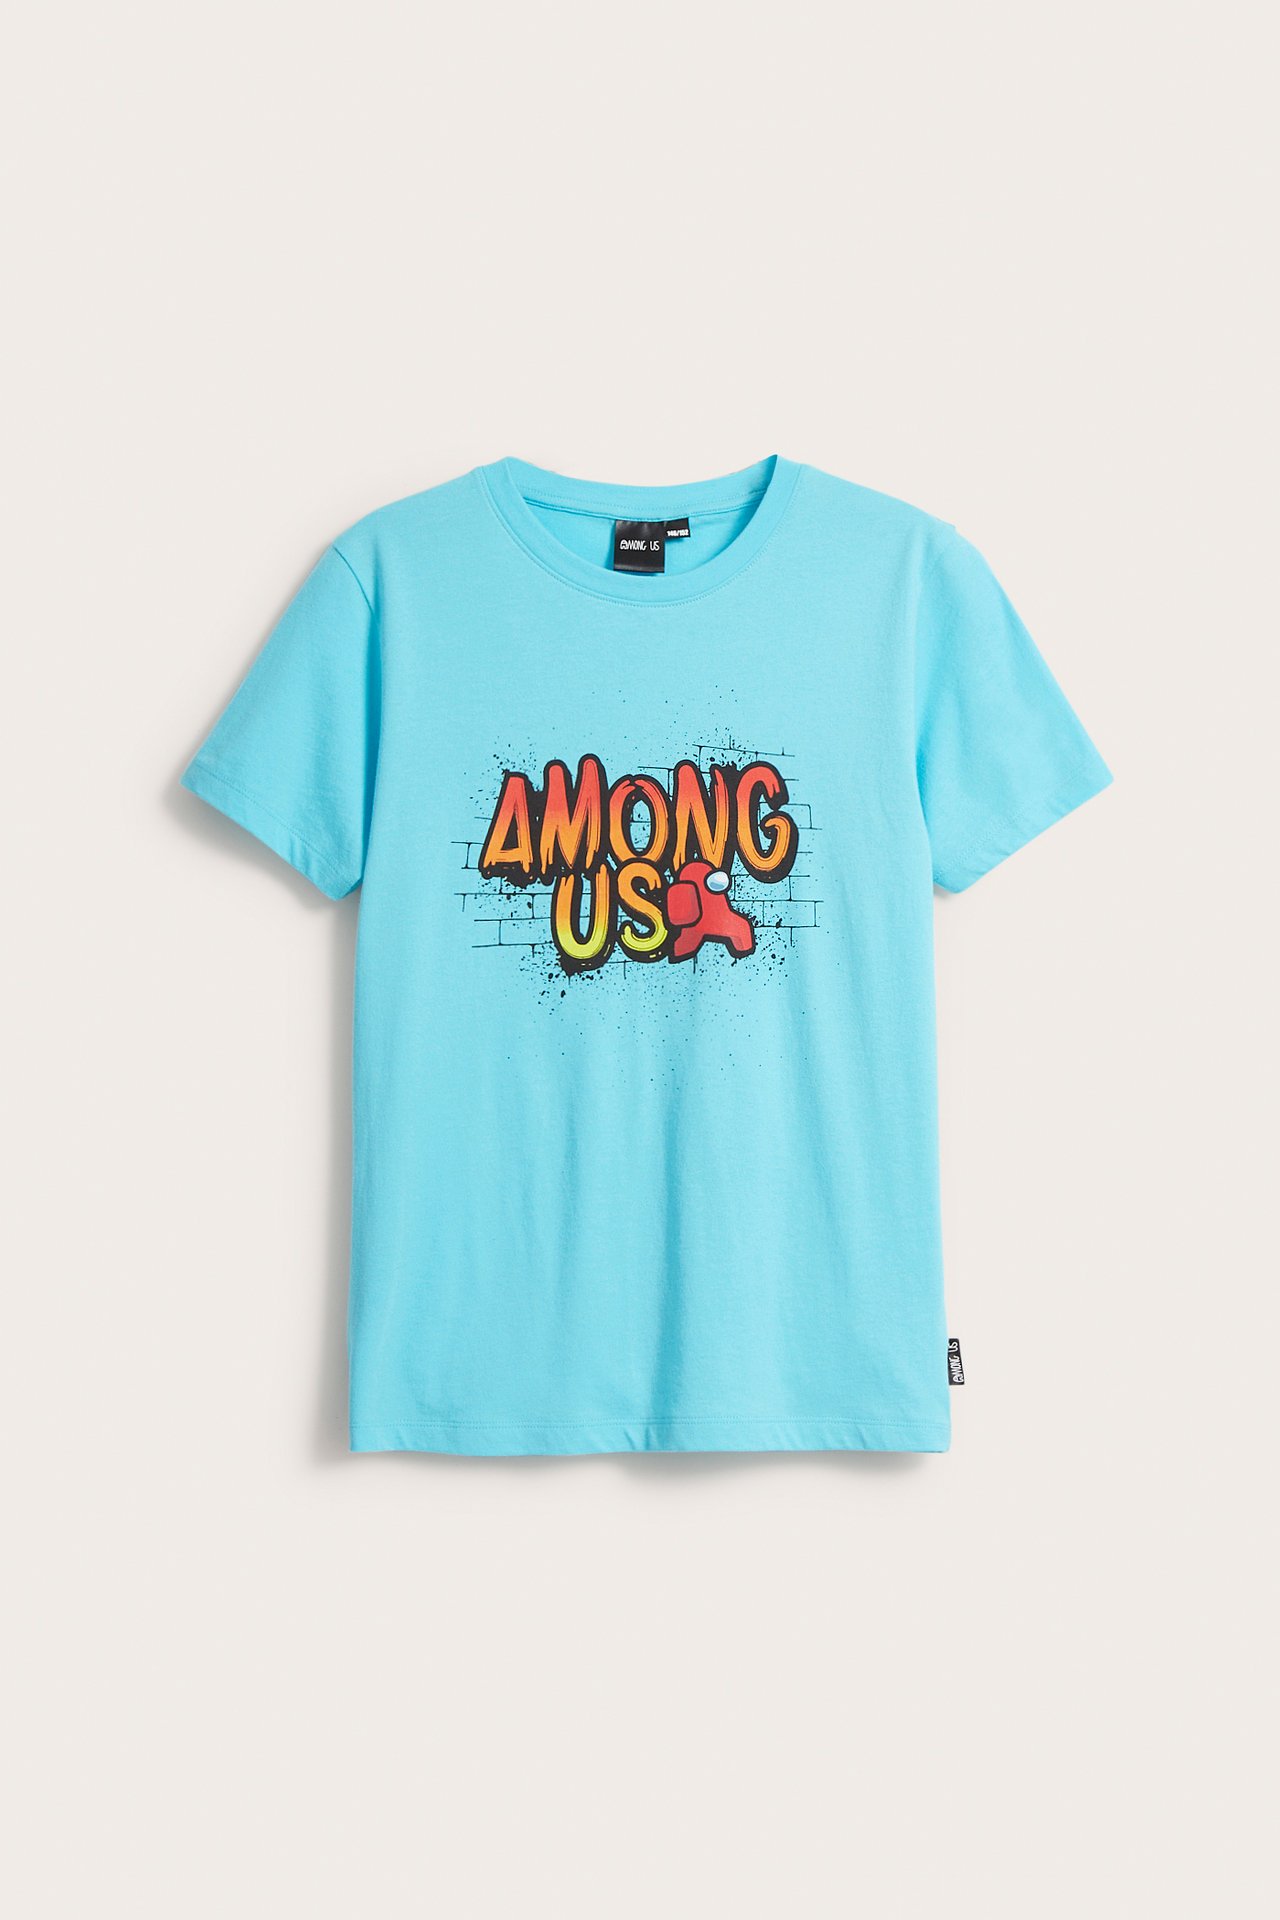 T-shirt Among Us - Turkusowy - 2